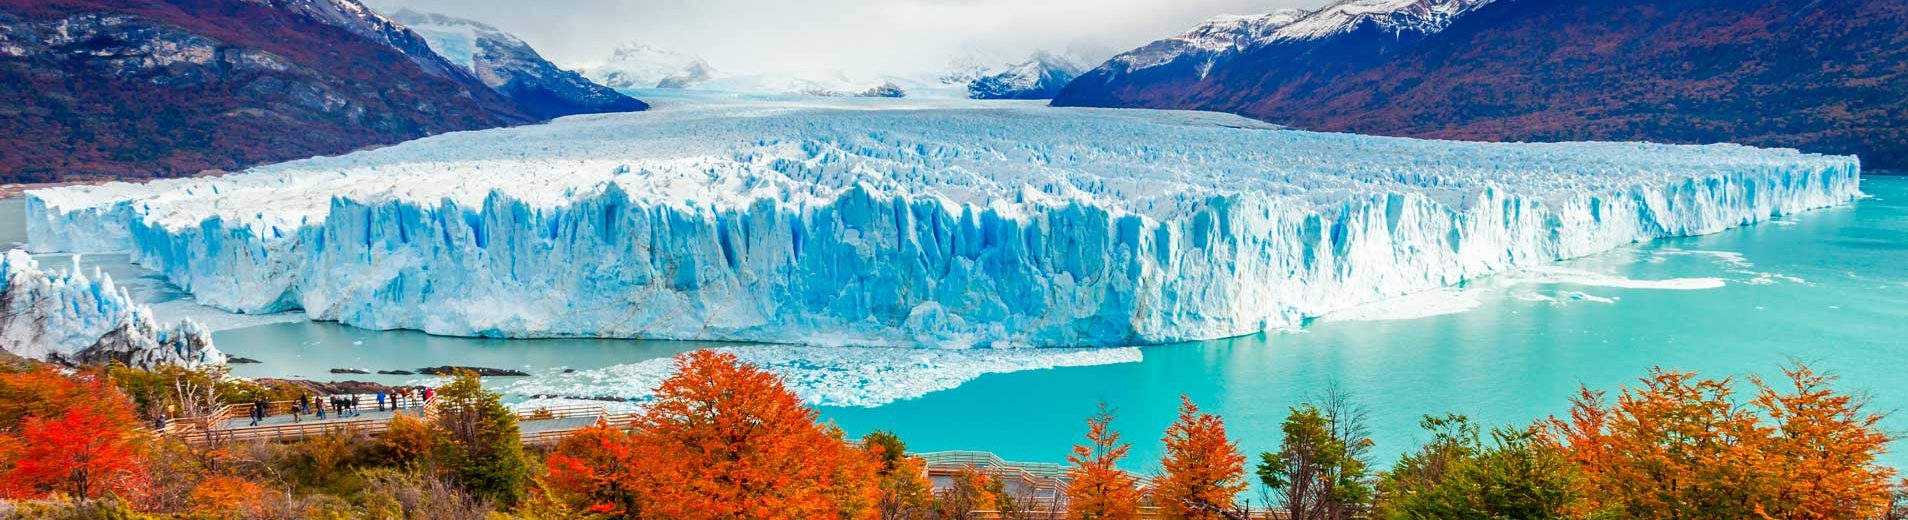 glaciar perito moreno em el calafate argentina